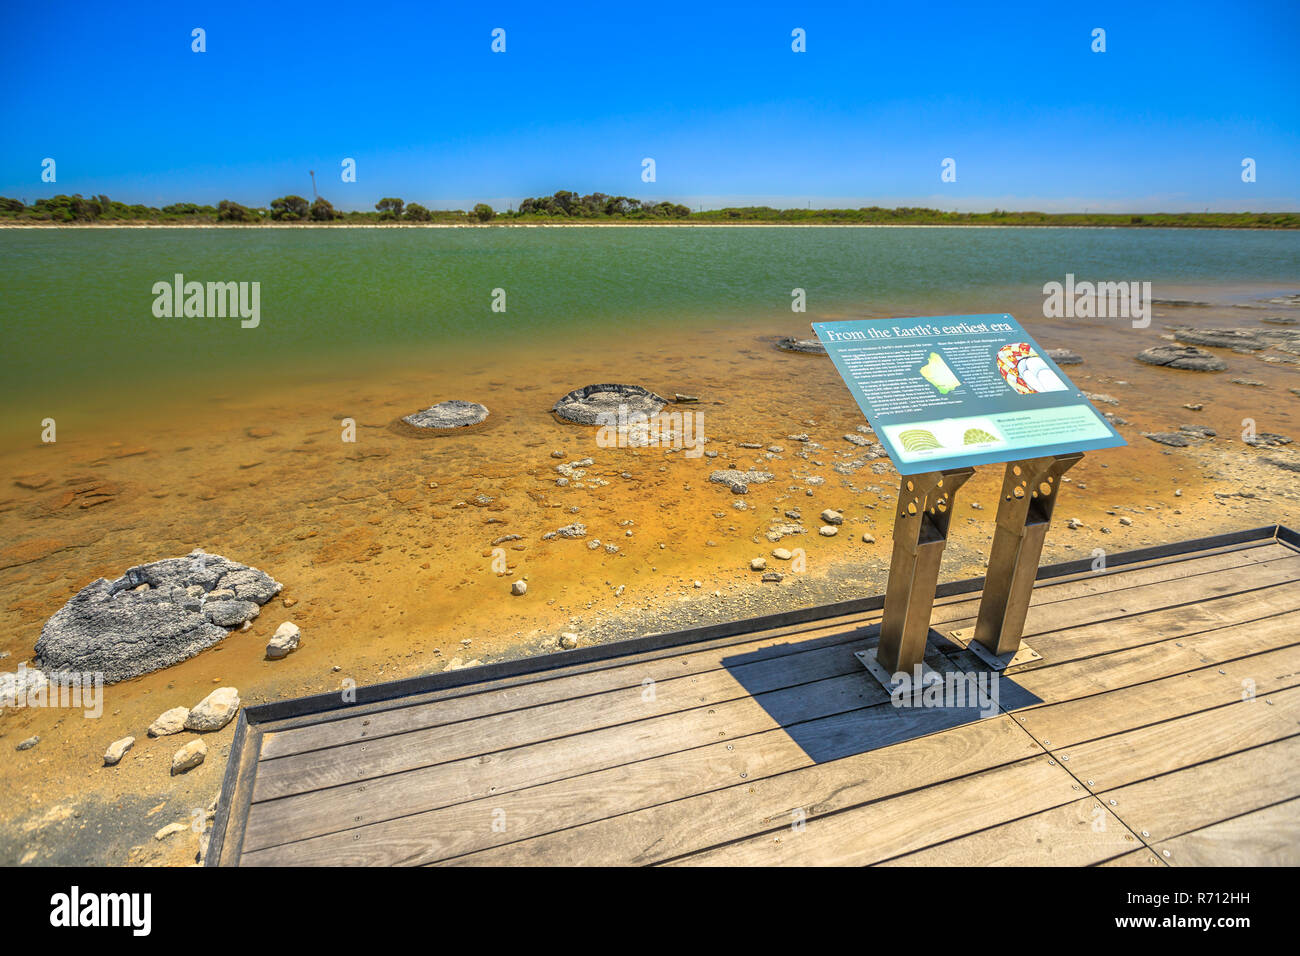 Cervantes, Australie - 23 Déc., 2017 : panneau d'interprétation de l'information au Lac de stromatolithes Thétis, un lac côtier saline dans Cervantès, l'ouest de l'Australie. Ensoleillé avec ciel bleu. Banque D'Images